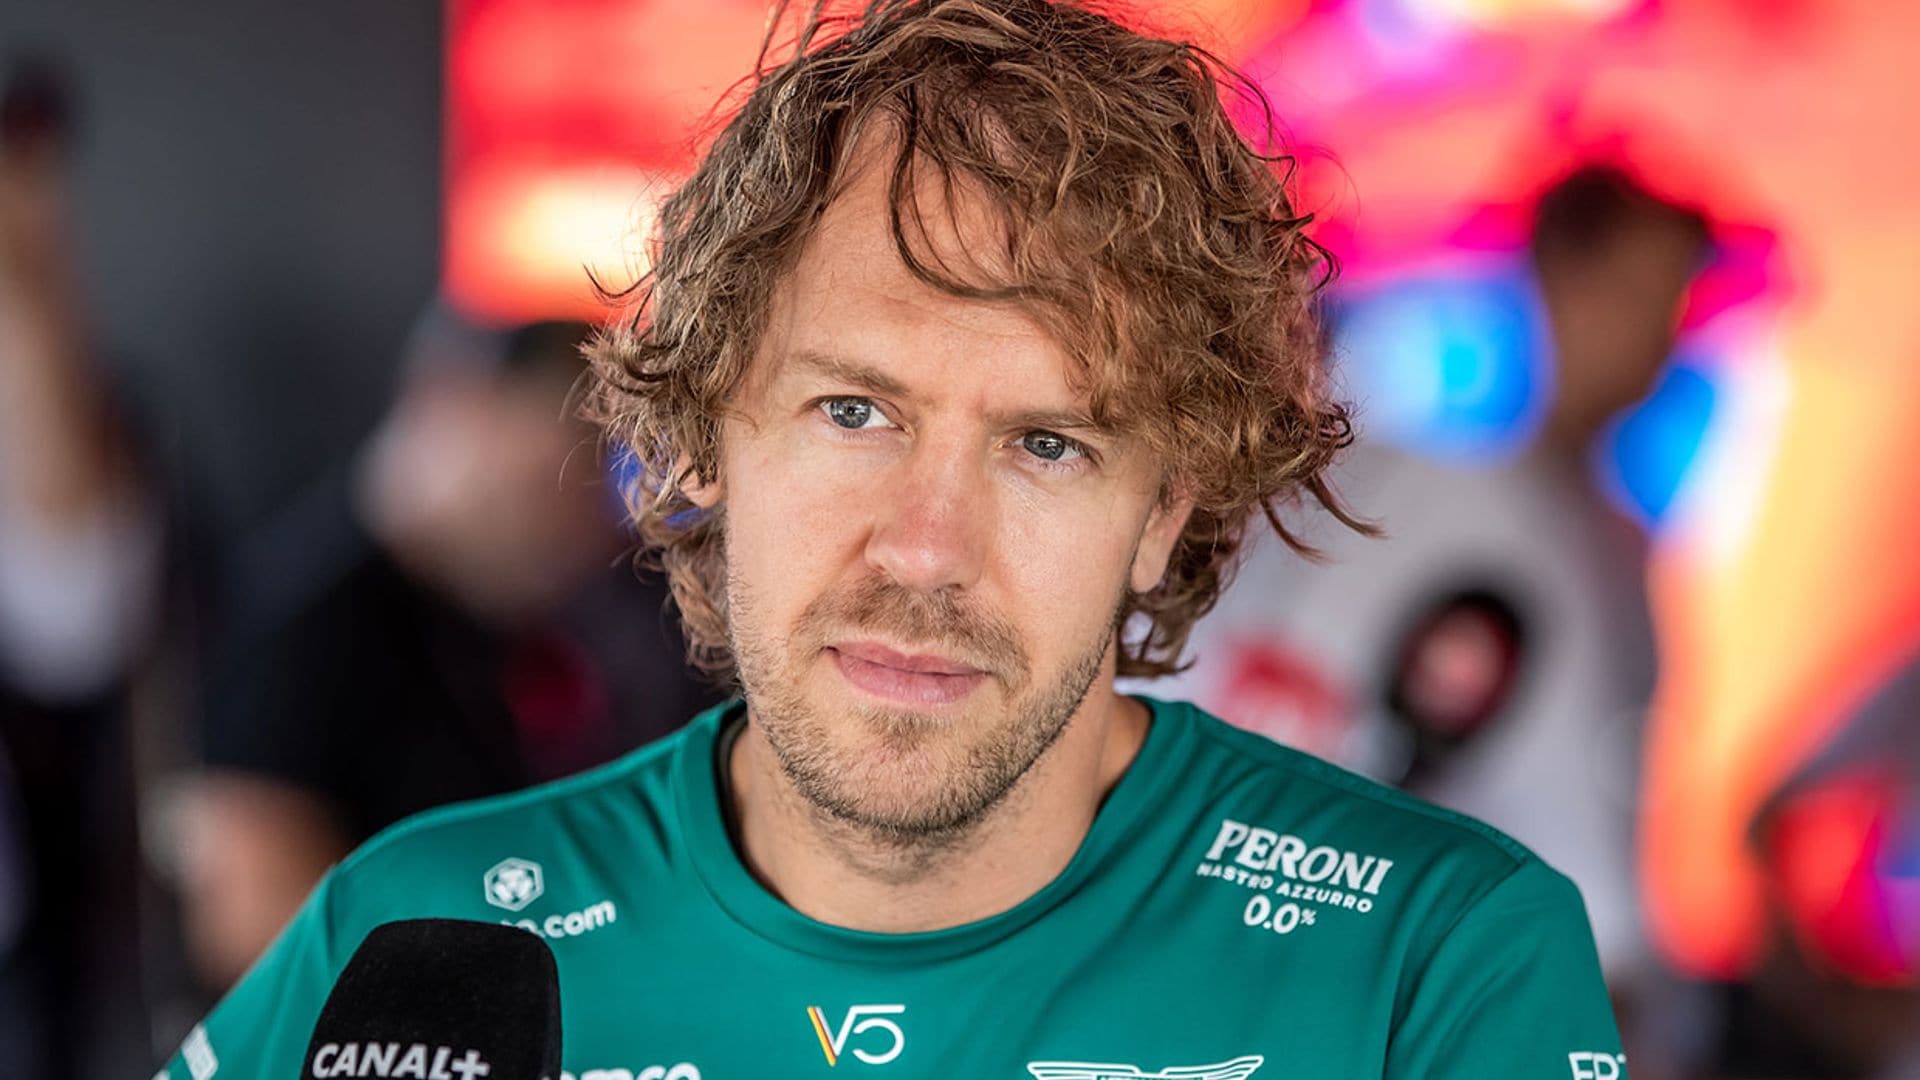 El piloto Sebastian Vettel persigue en patinete a los ladrones que le robaron en Barcelona